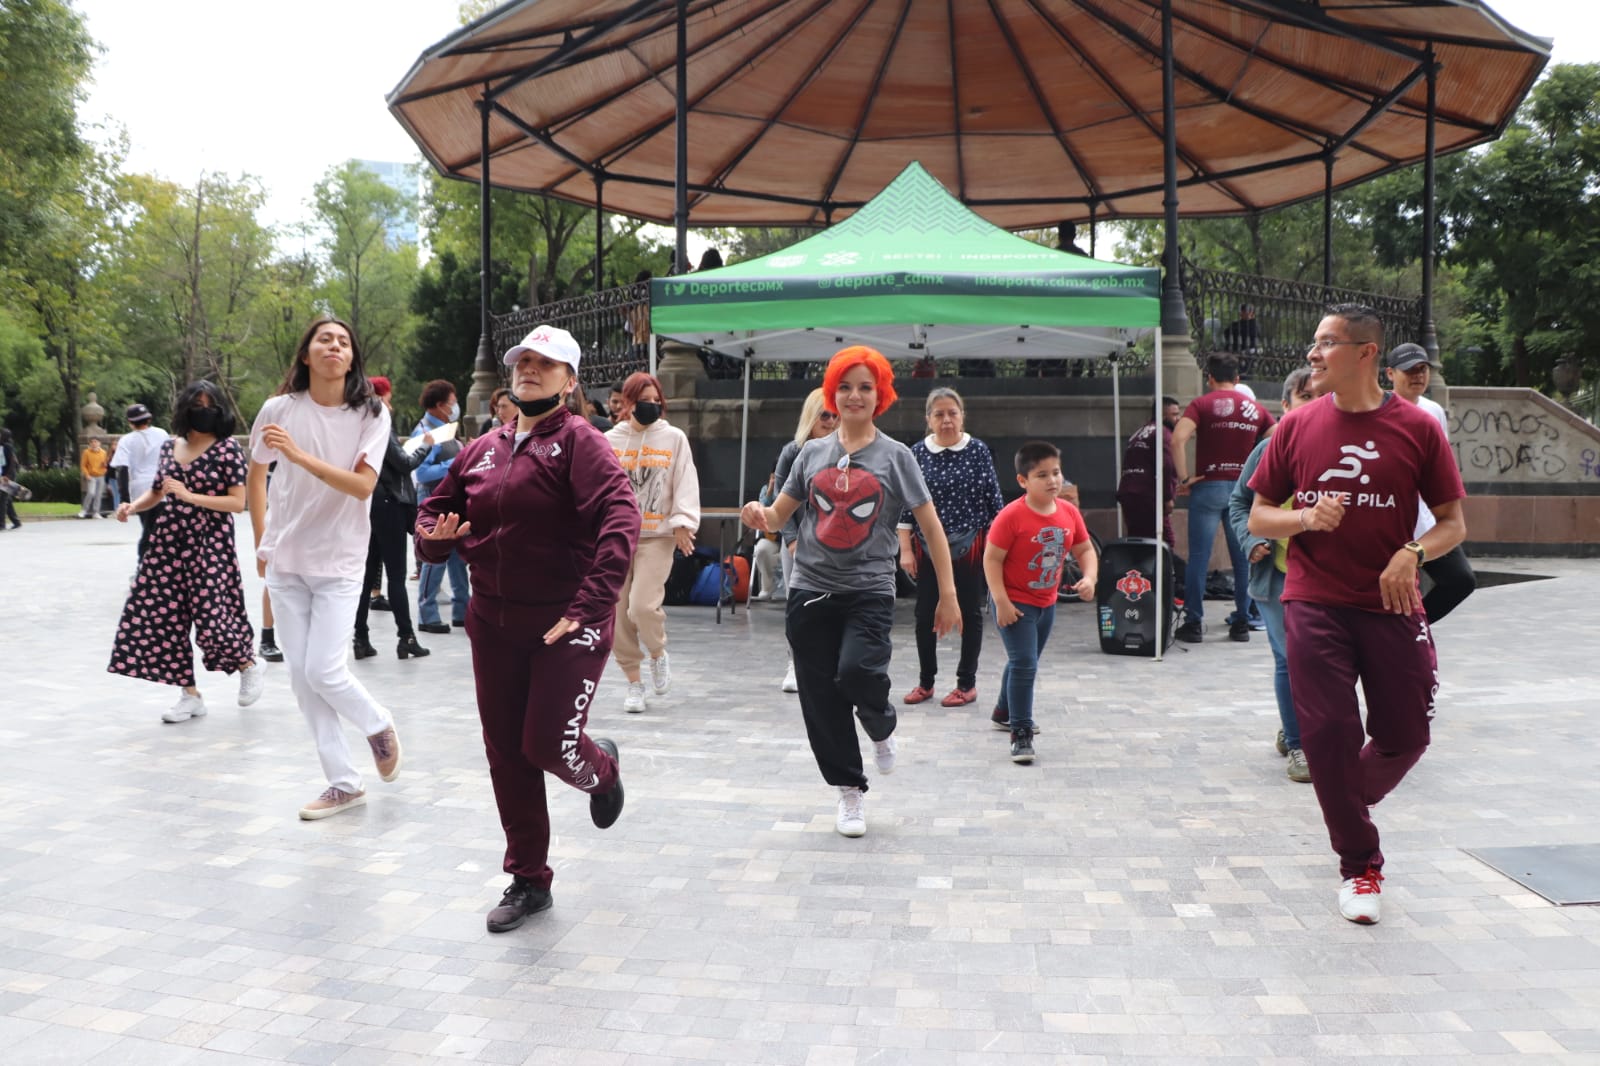 INDEPORTE organiza Maratón de Baile “Ponte Pila” al ritmo de danzón y k-pop